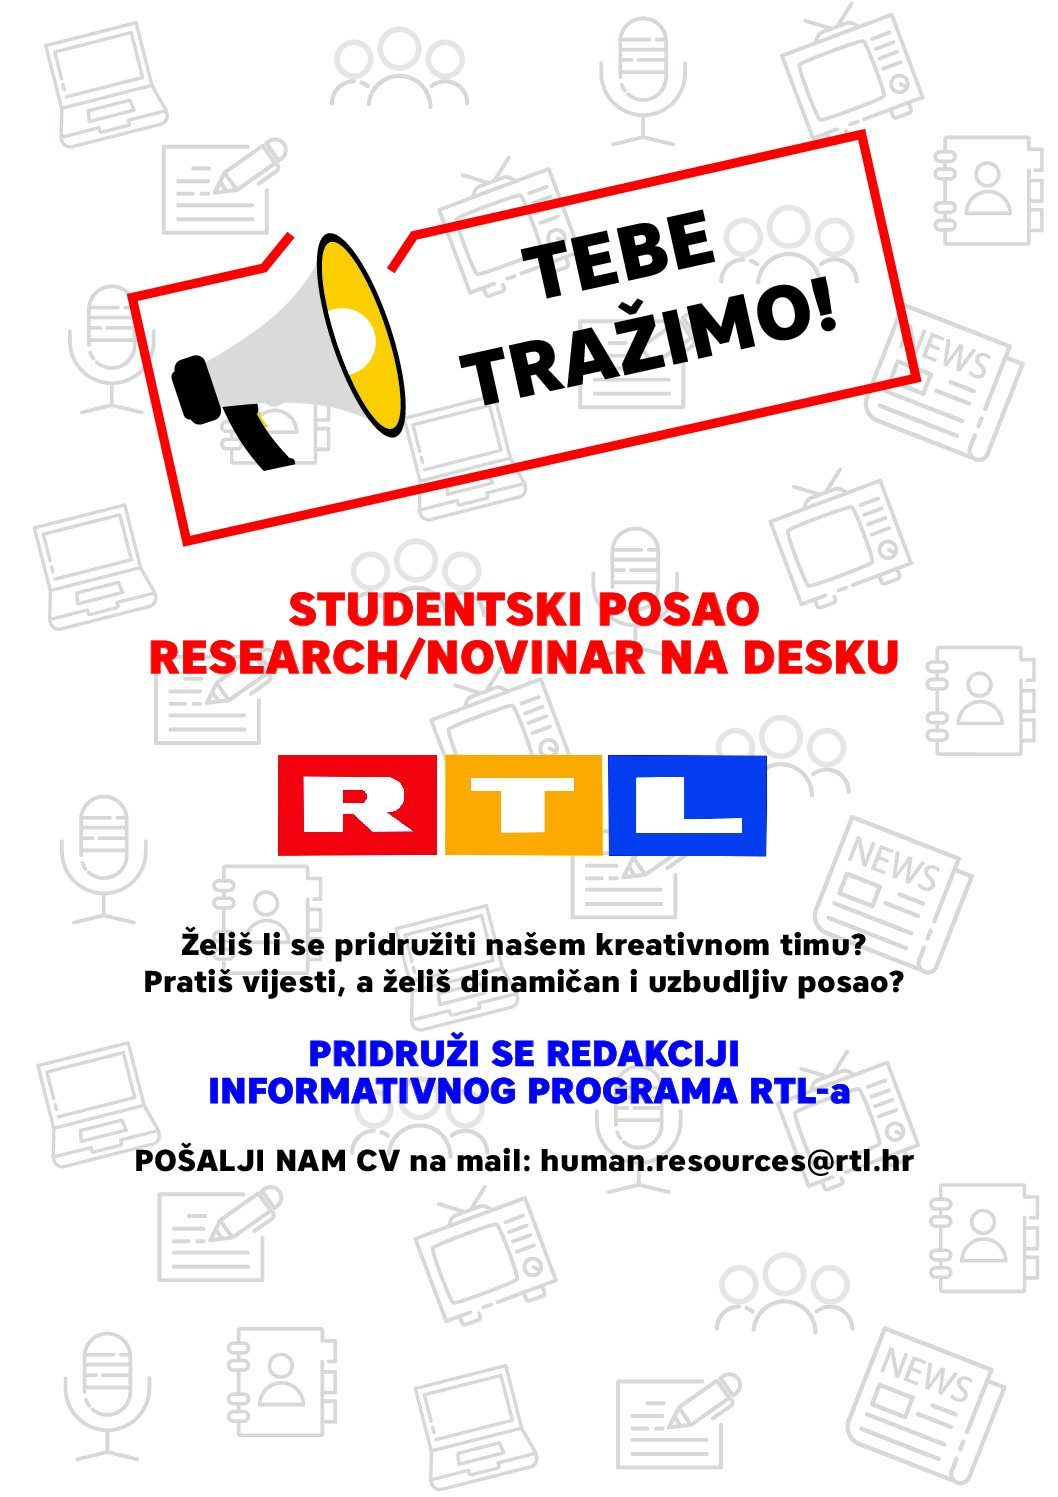 RTL televizija traži studente HKS-a za rad u redakciji!